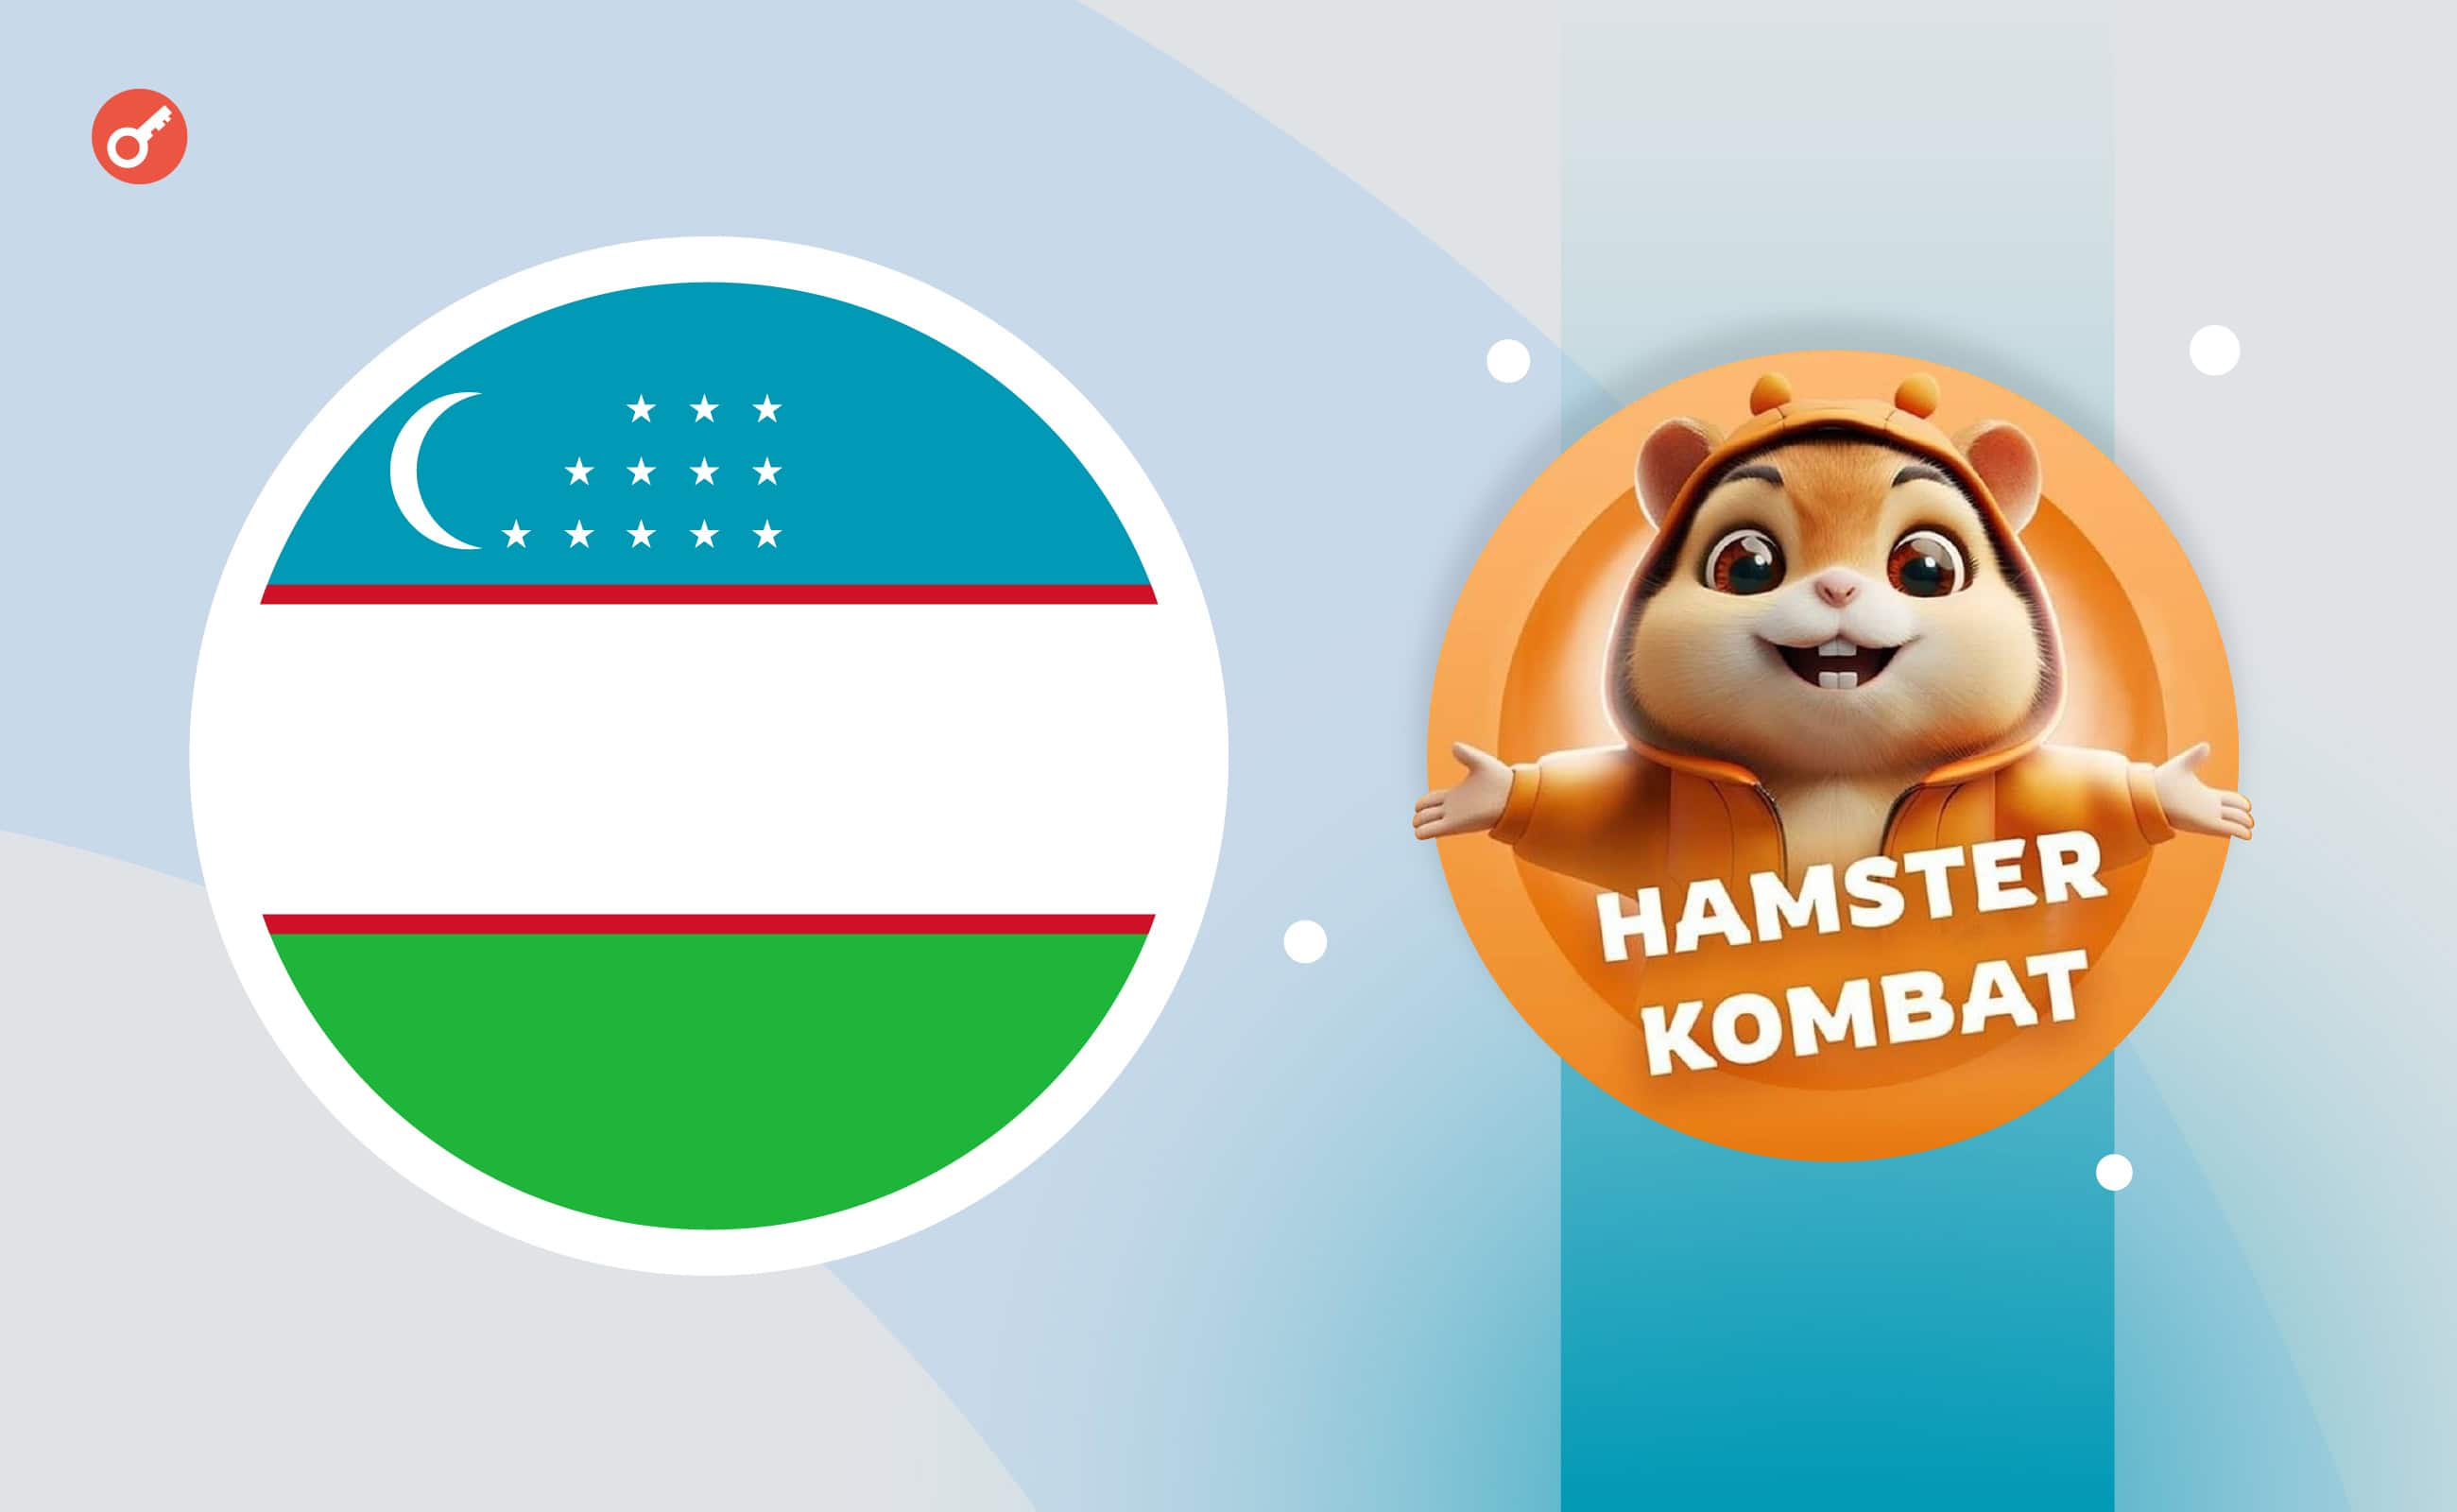 Регулятор Узбекистана опроверг информацию о запрете игры Hamster Kombat